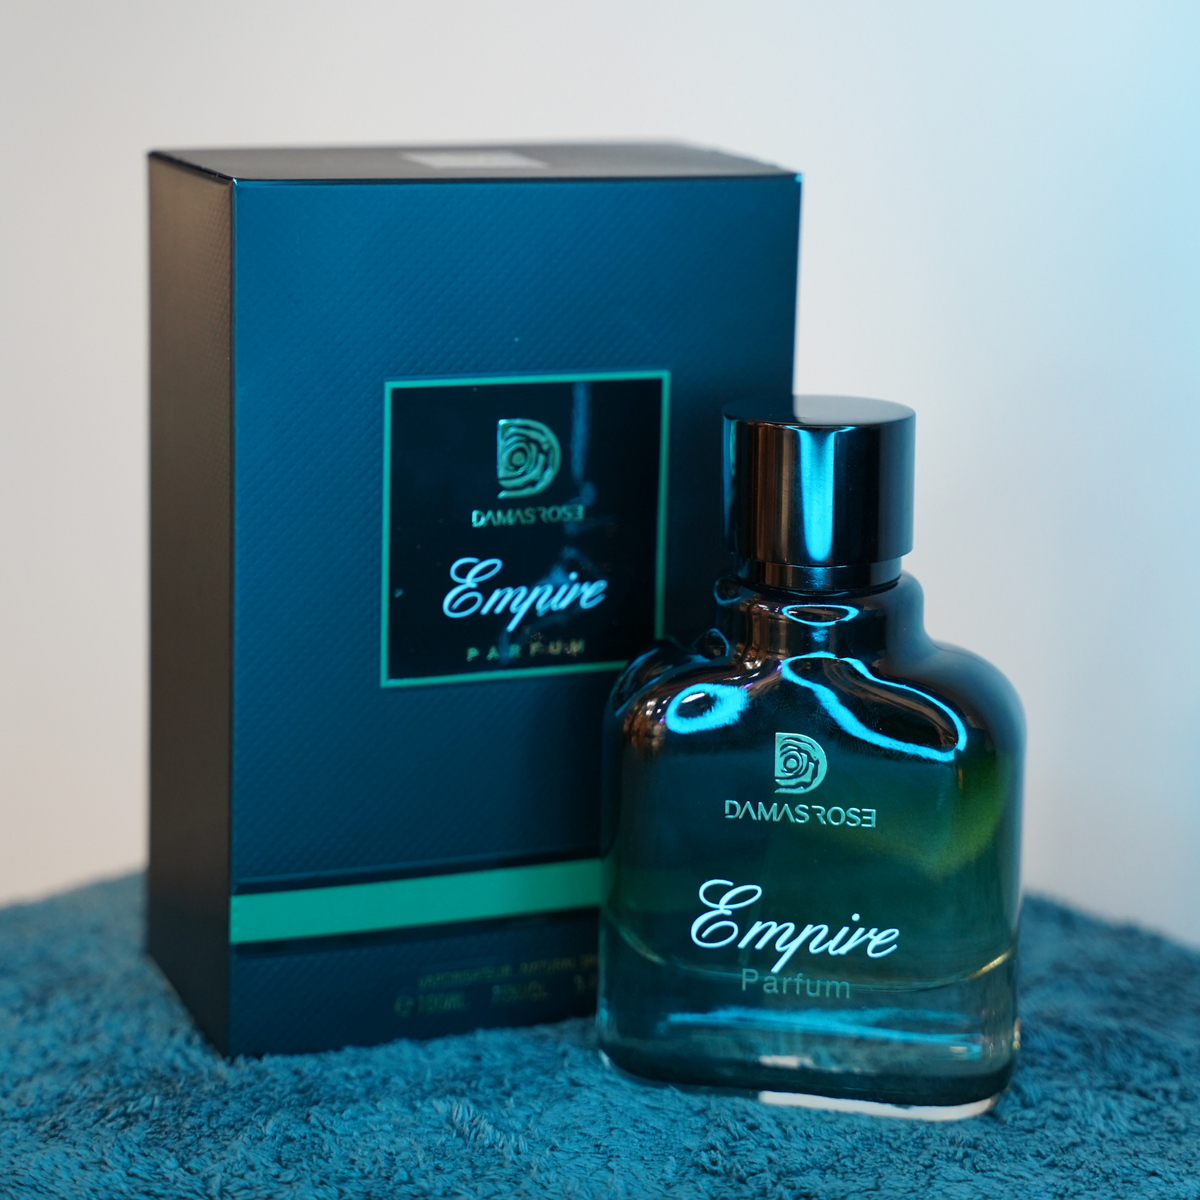 Empire Unisex Eau De Perfume by Damas Rose - 100ml